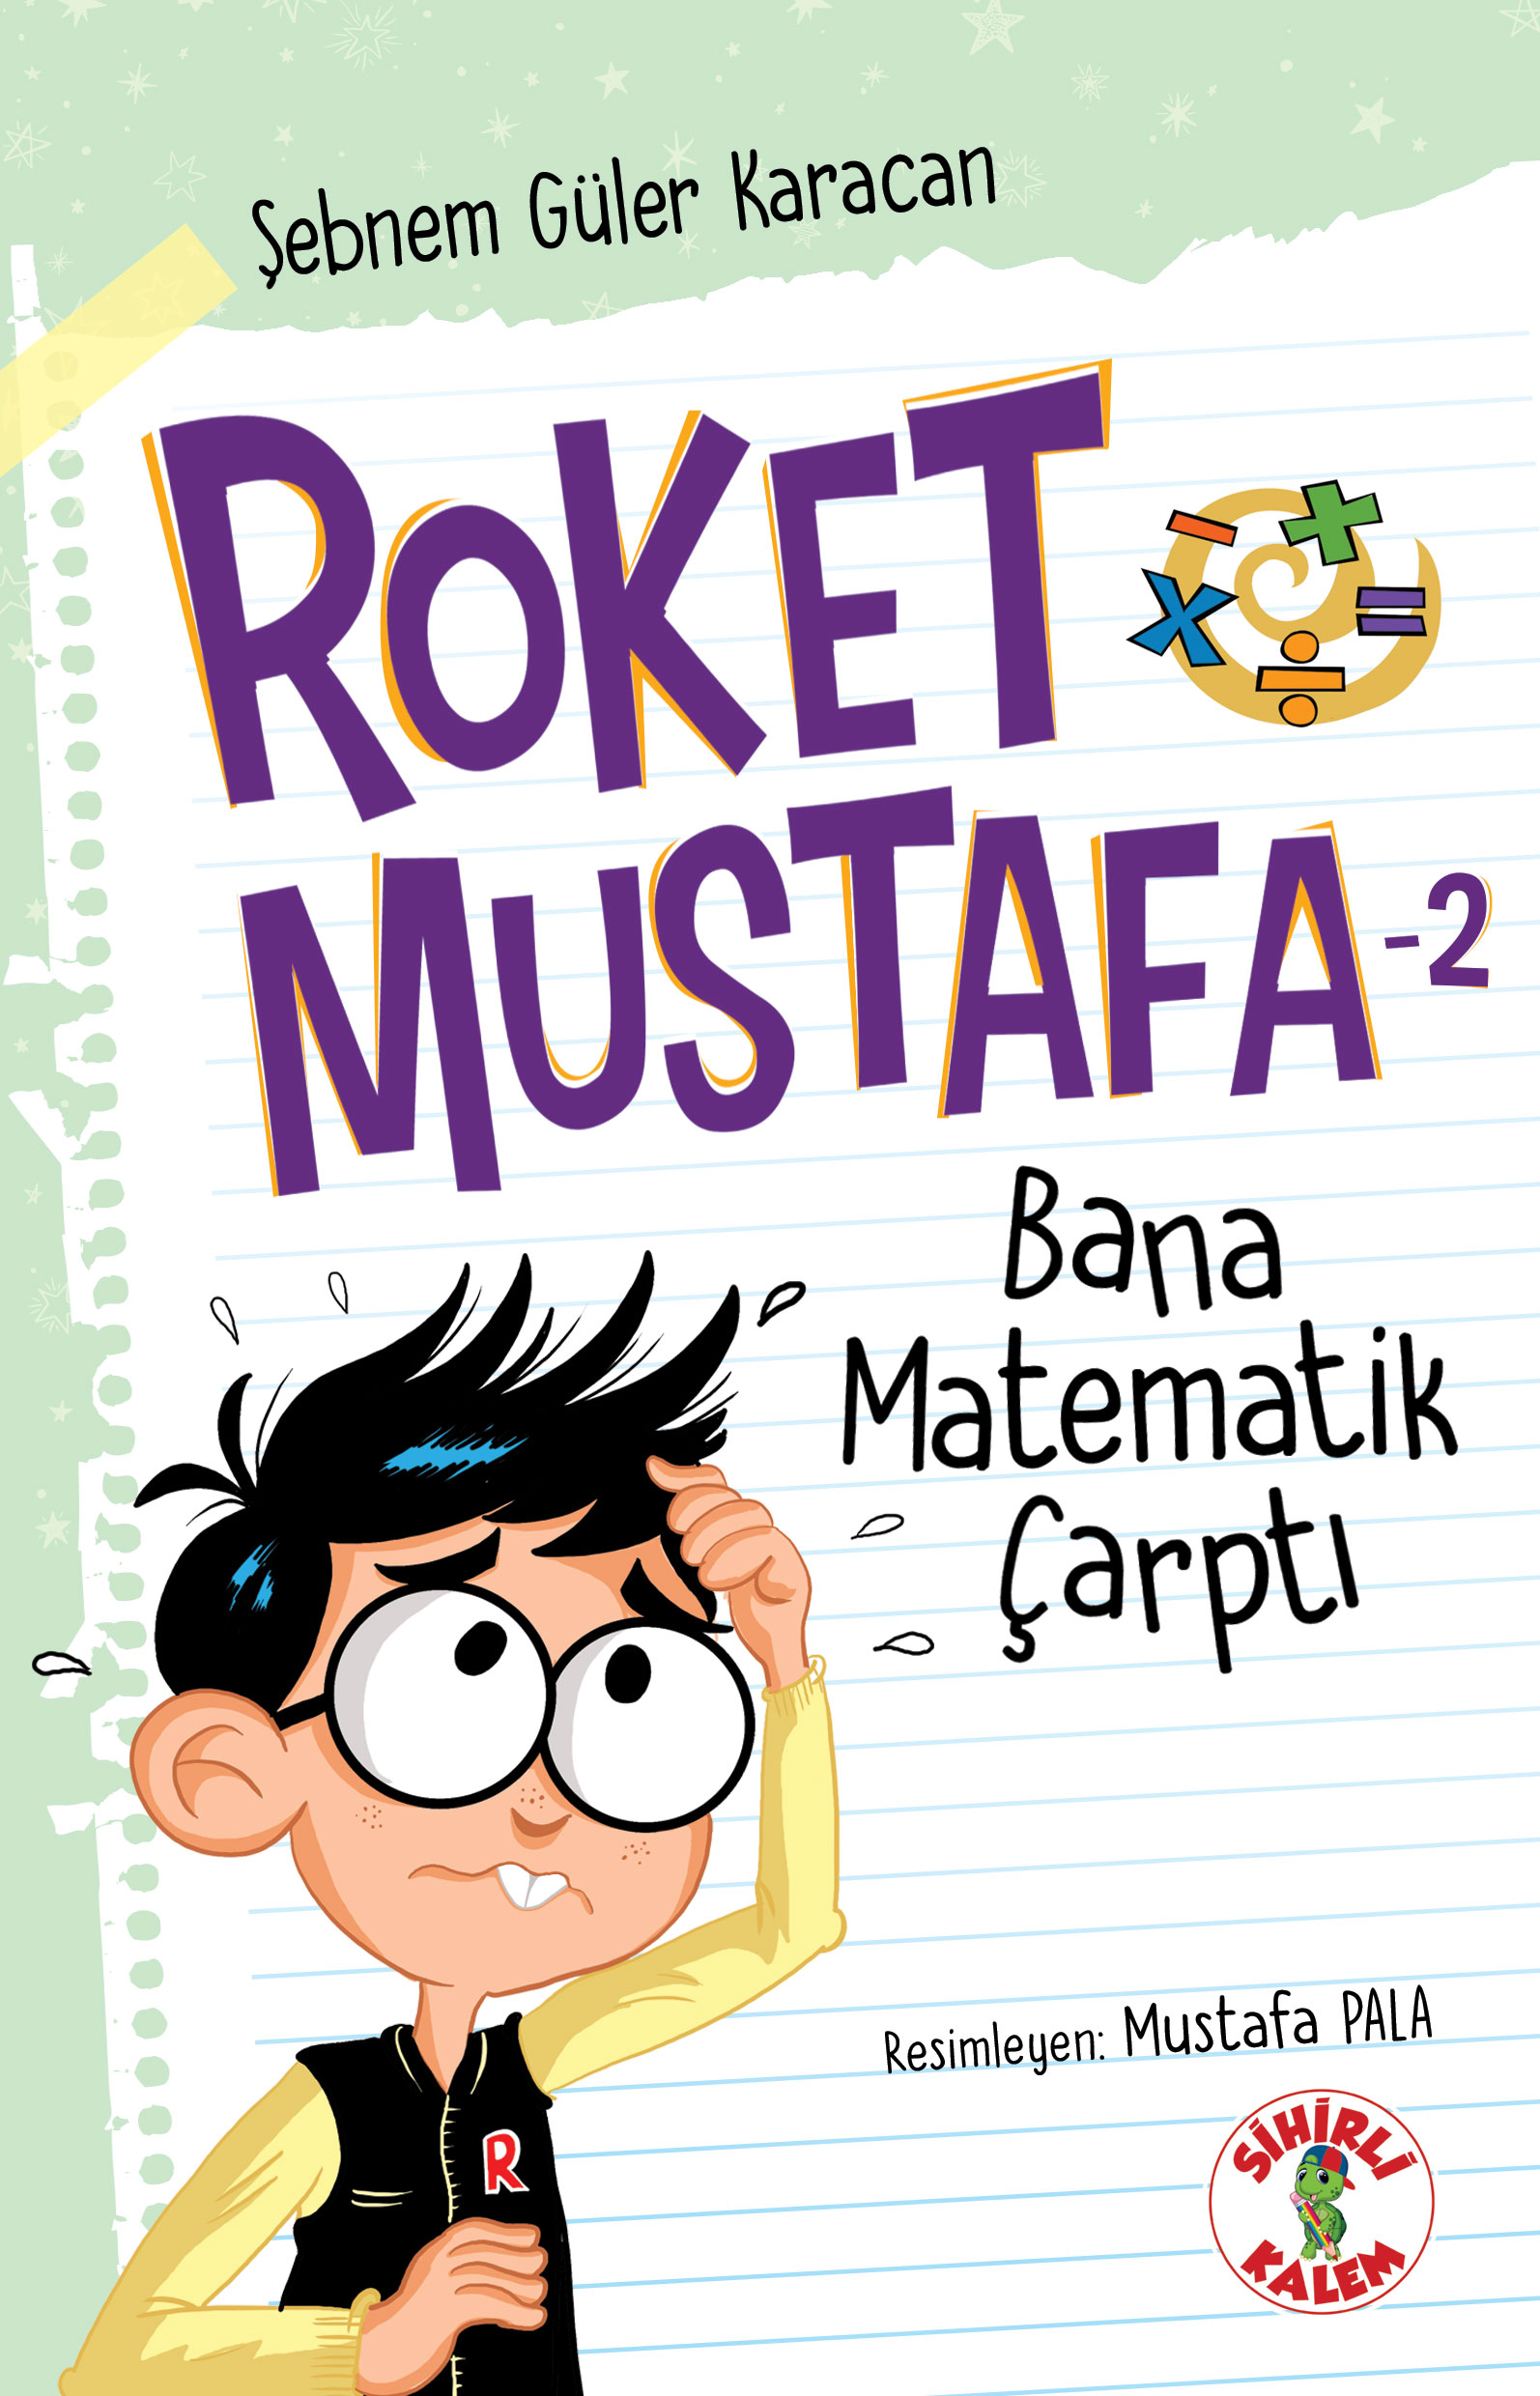 Roket Mustafa - 2 Bana Matematik Çarptı